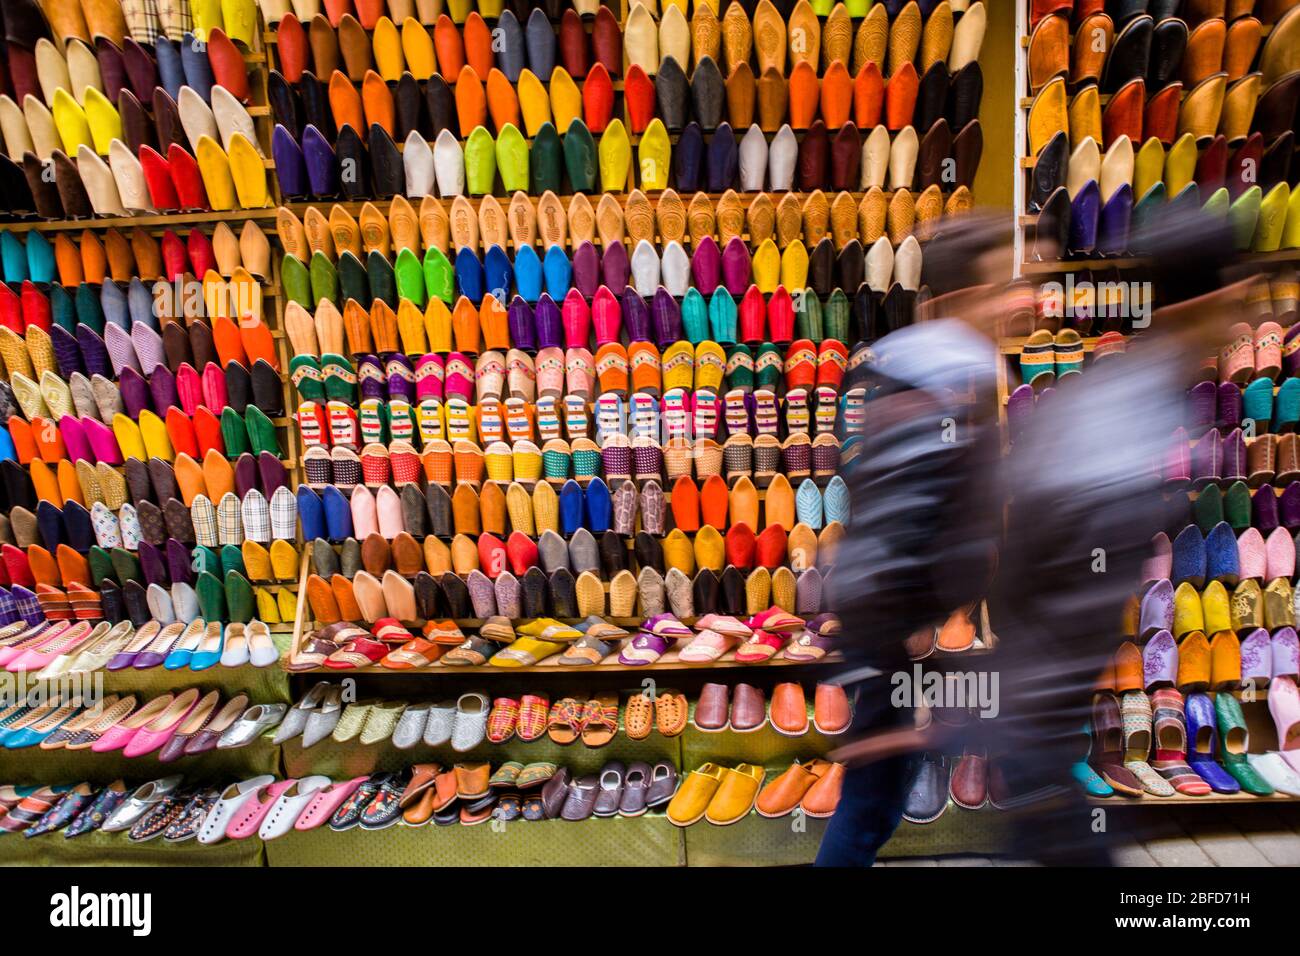 Les piétons se promènent devant un stand de rue vendant des chaussons en cuir traditionnels colorés dans la médina (vieux quartier) de Fez, au Maroc. Banque D'Images